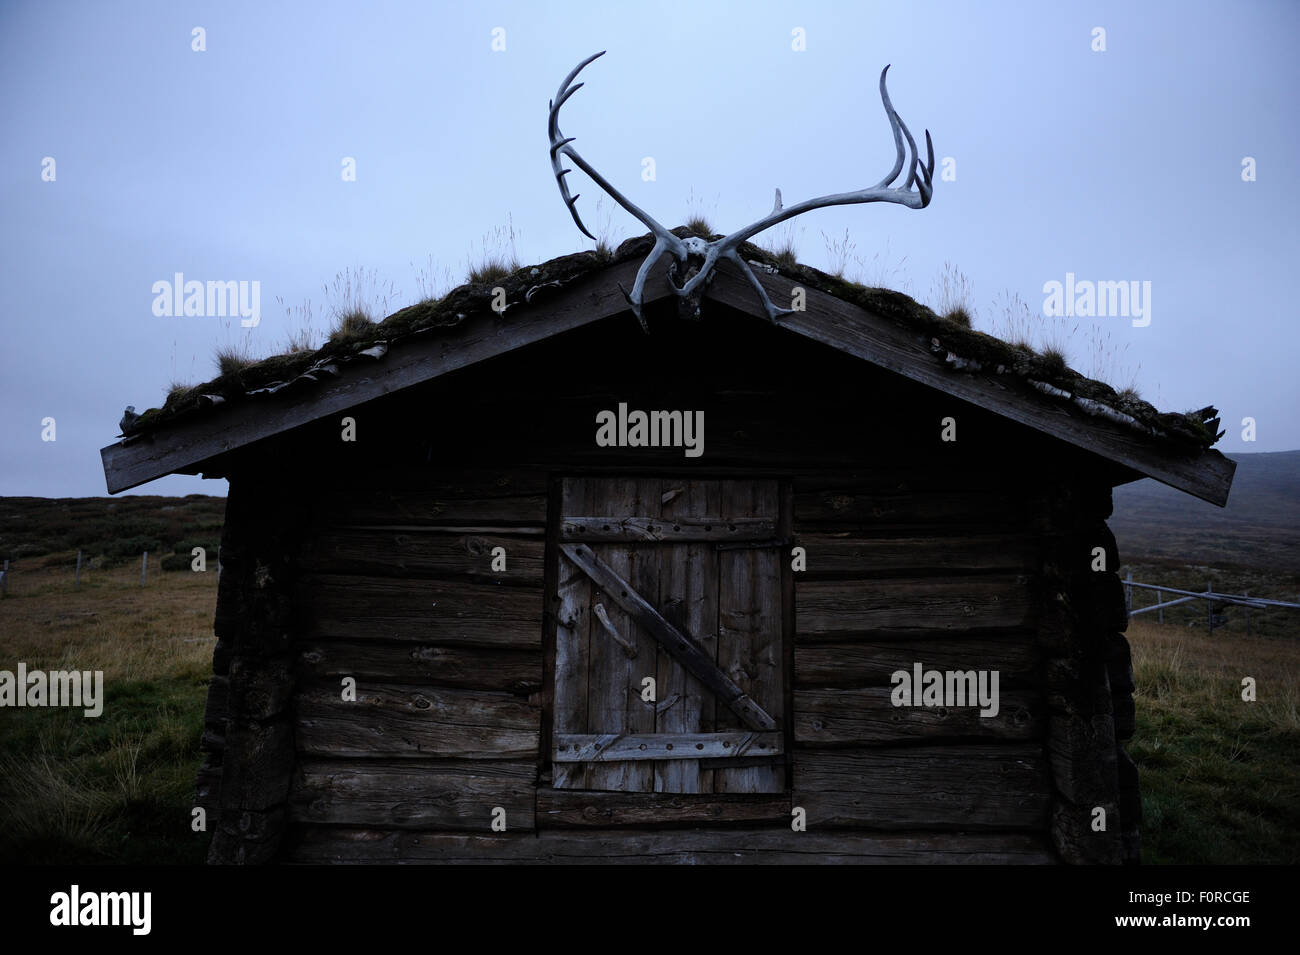 Petit bâtiment en bois avec reindeer antlers sur porte, Forollhogna Parc National, la Norvège, septembre 2008 Banque D'Images